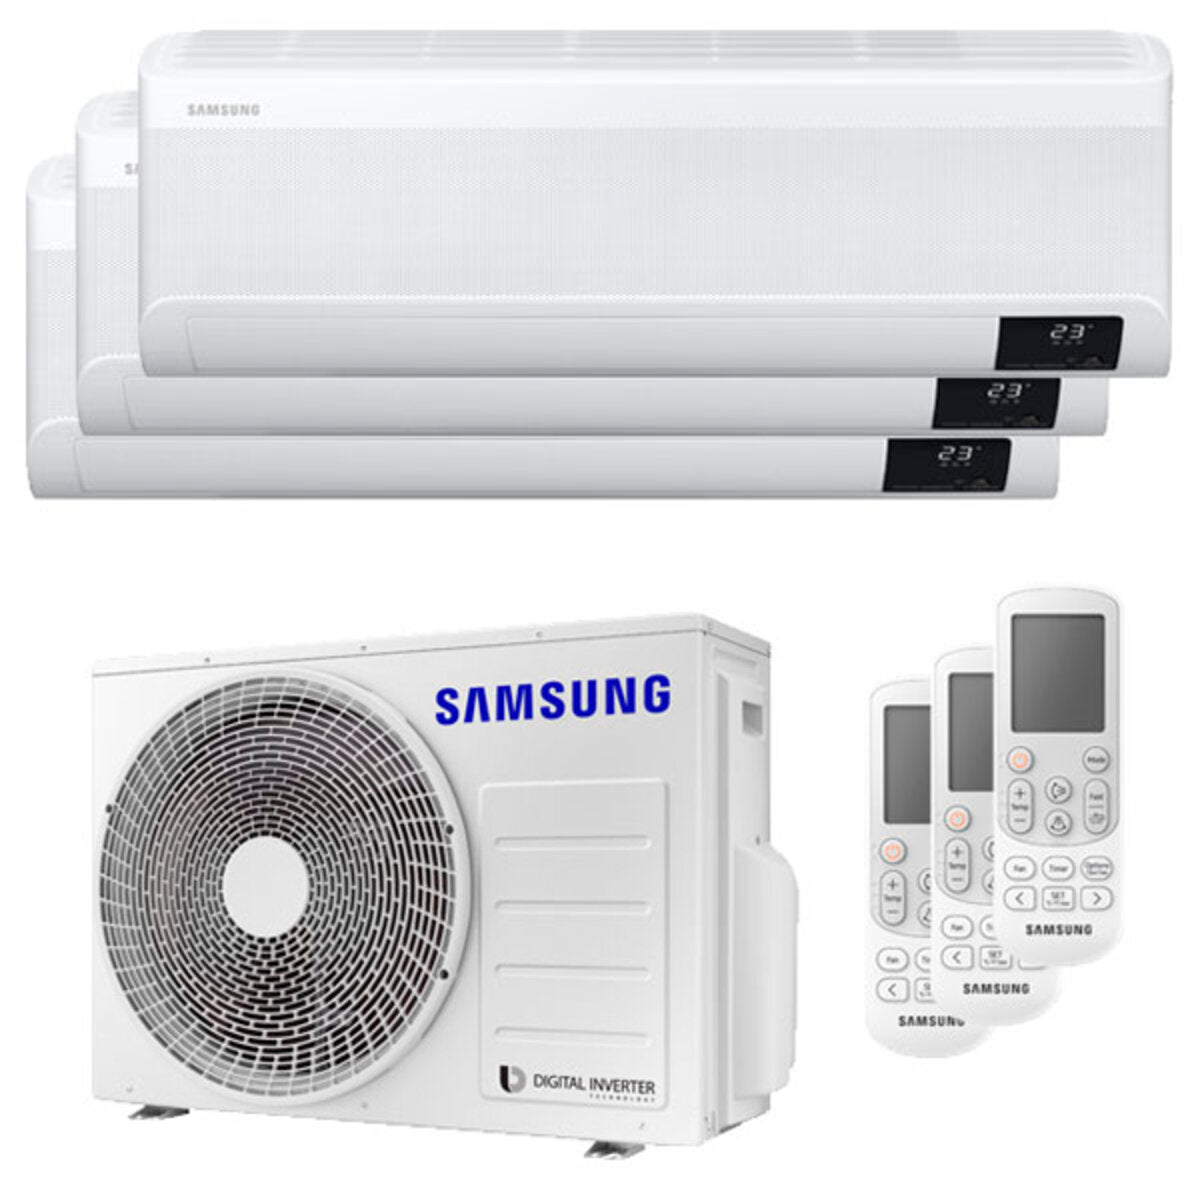 Samsung windfree Klimaanlage Avant Trial Split 7000 + 7000 + 7000 BTU Inverter A++ WLAN Außengerät 5,2 kW